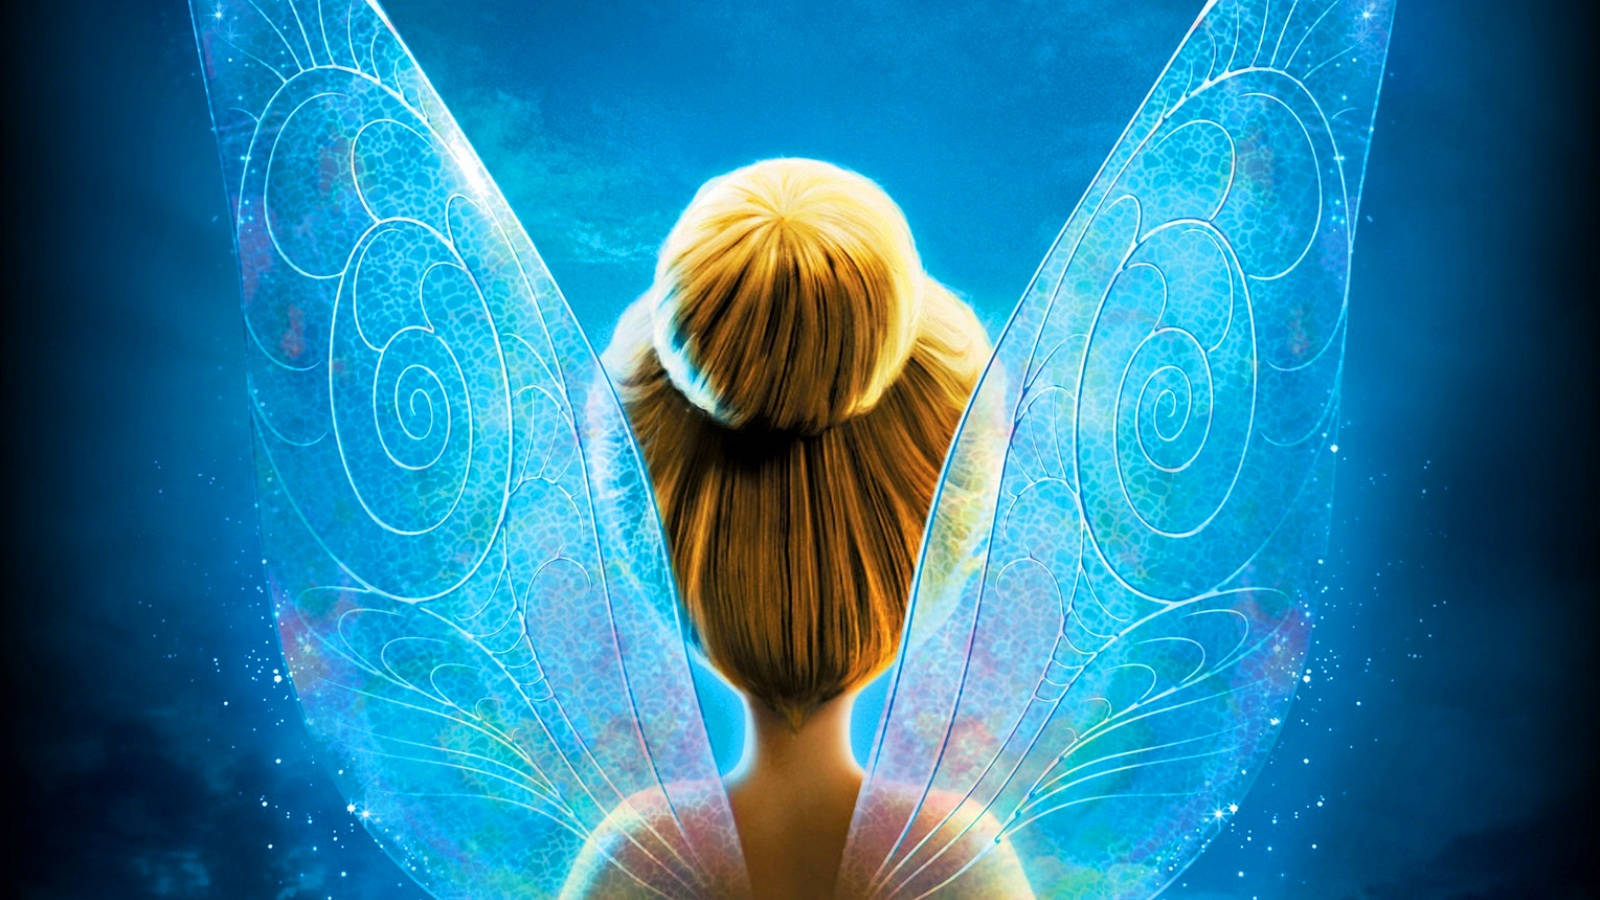 Tinker Bell Glowing Wings Wallpaper